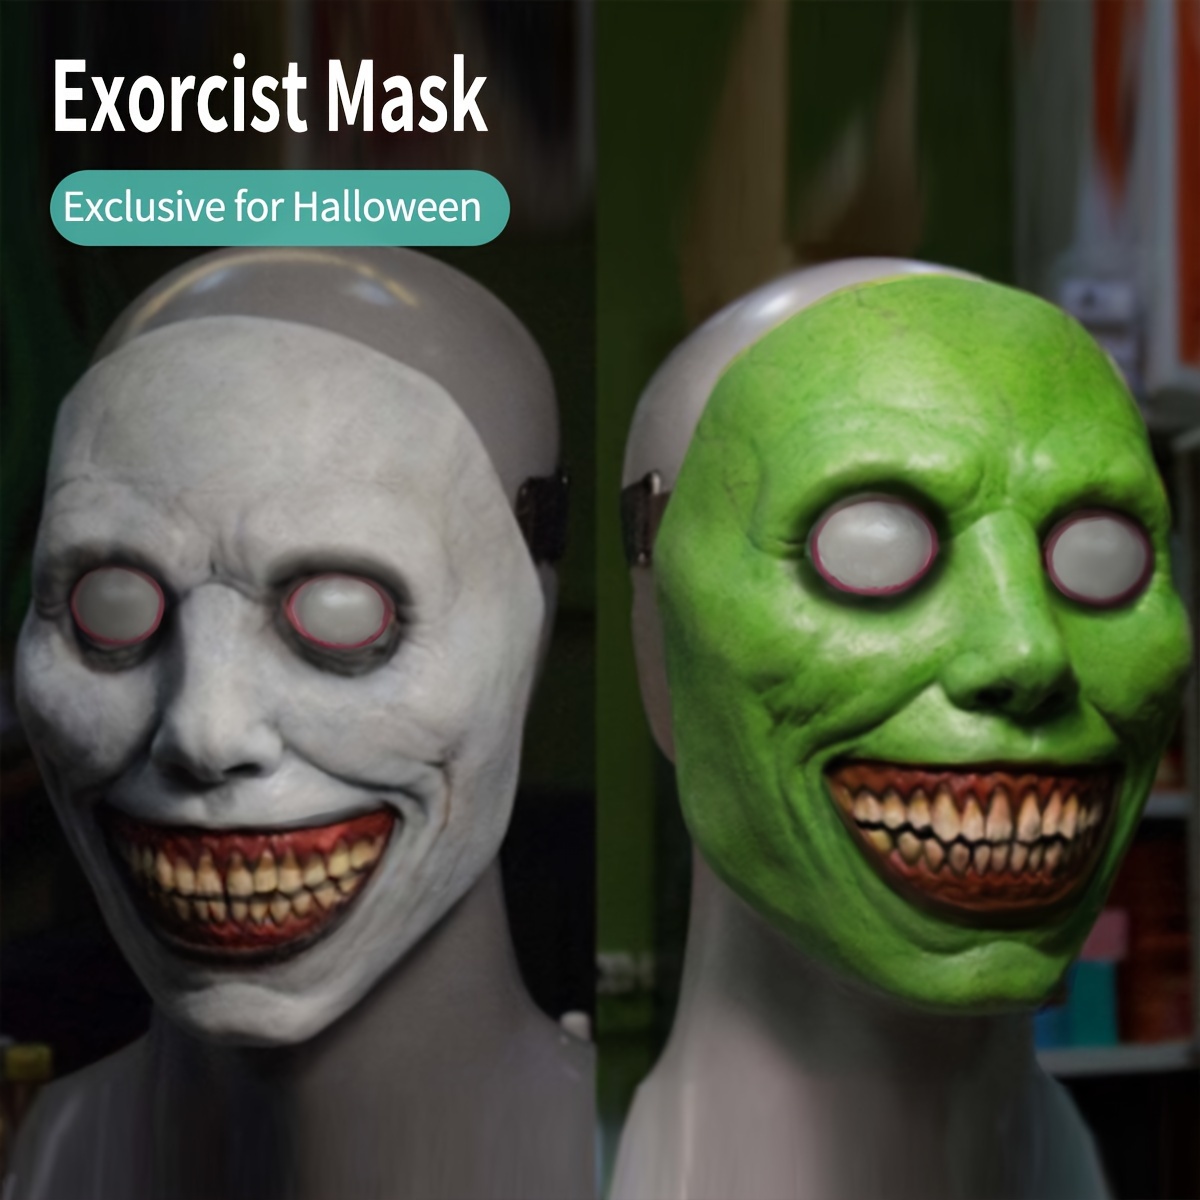 Diximus Máscara realista de Halloween de demonio para adultos, hombre y  mujer, accesorios de cosplay de terror, máscaras malvadas